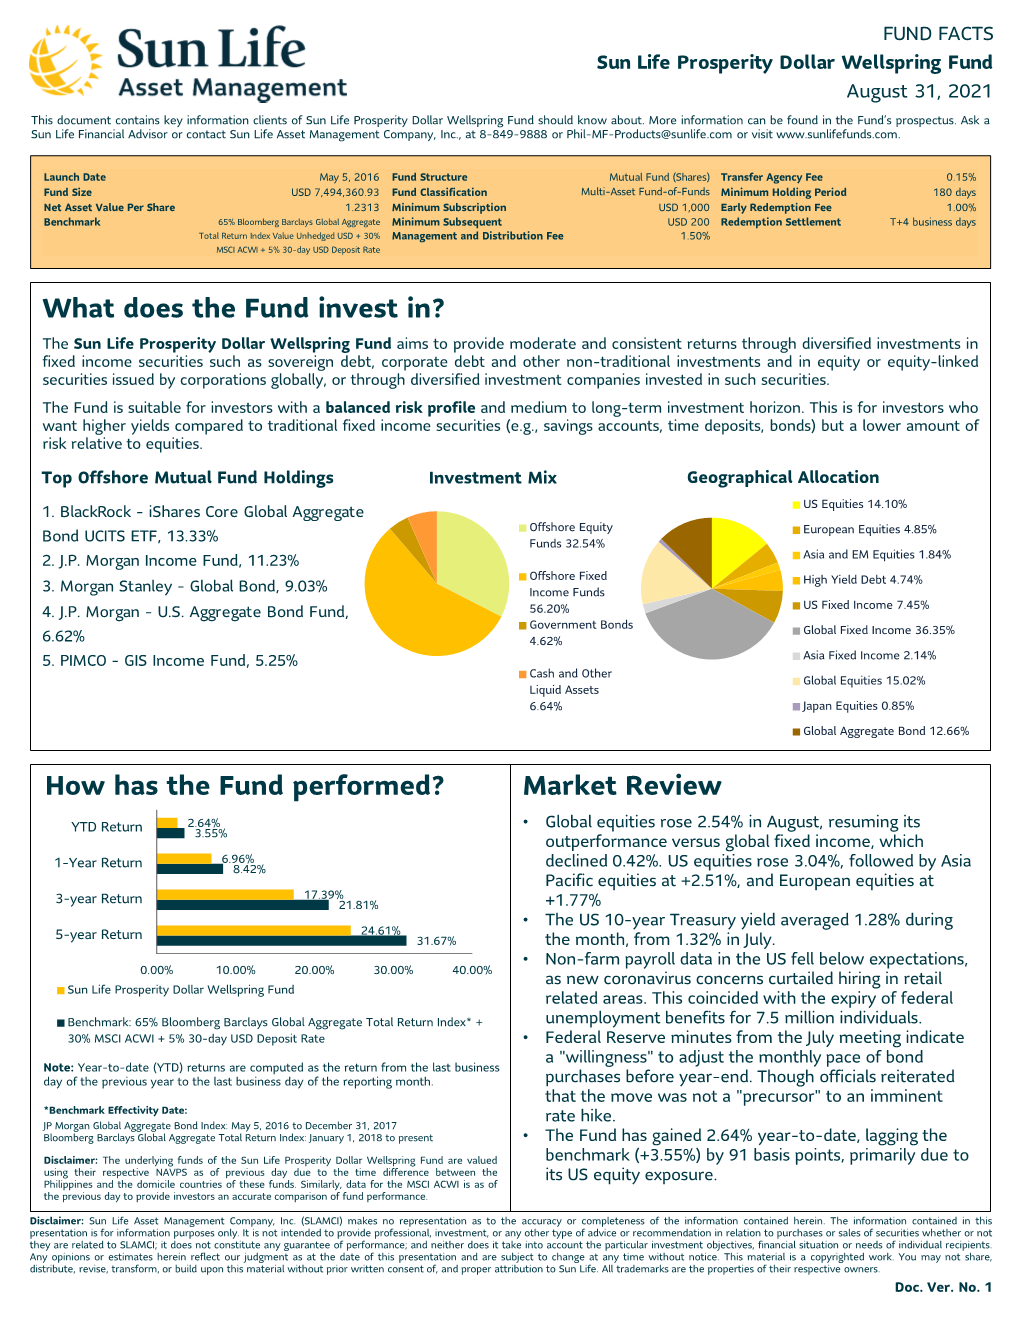 Fund Fact Sheet